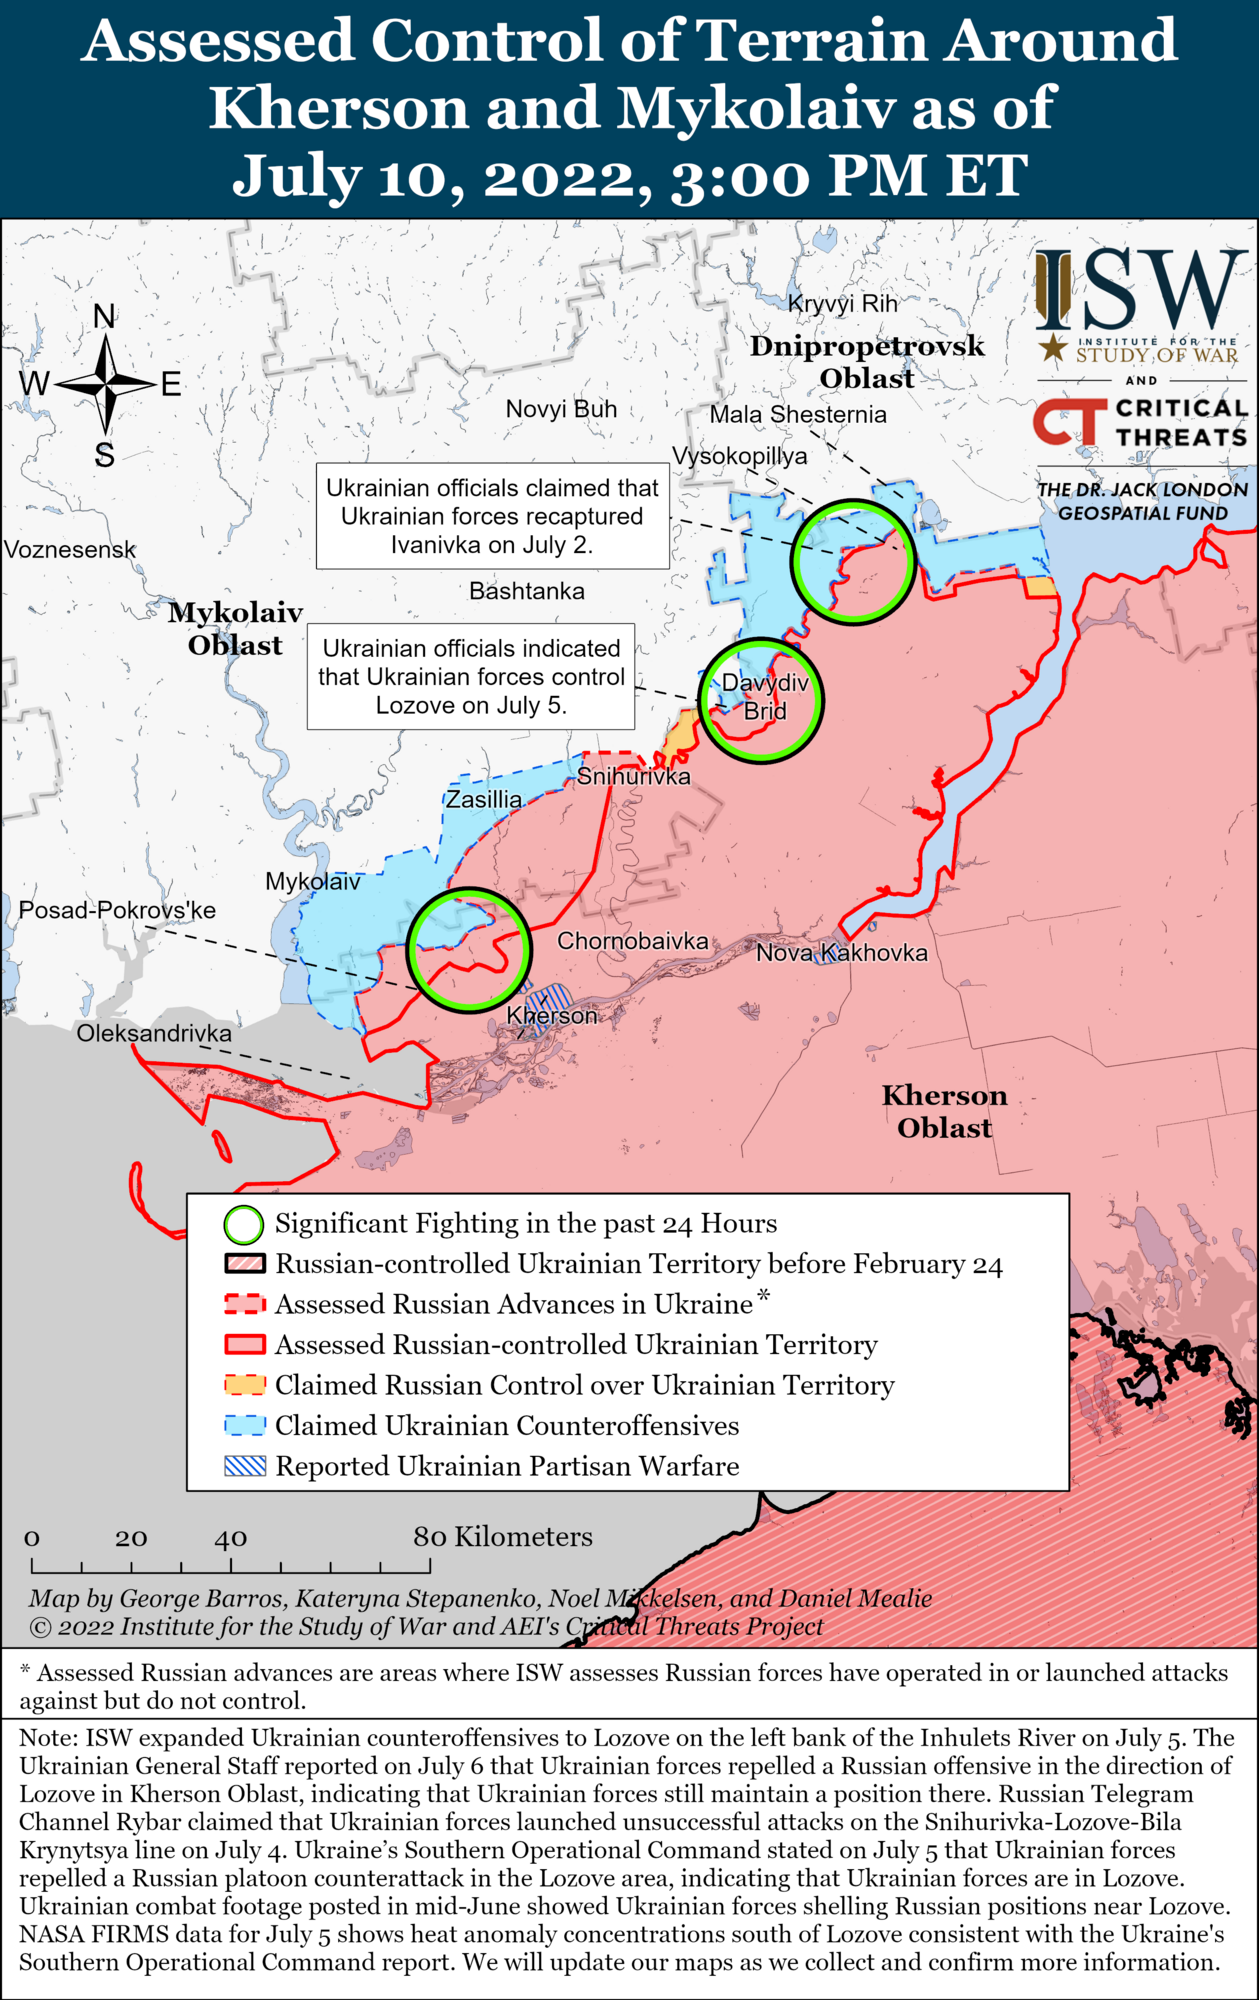 Войска РФ использовали ЗРК С-300 для ударов на южном направлении